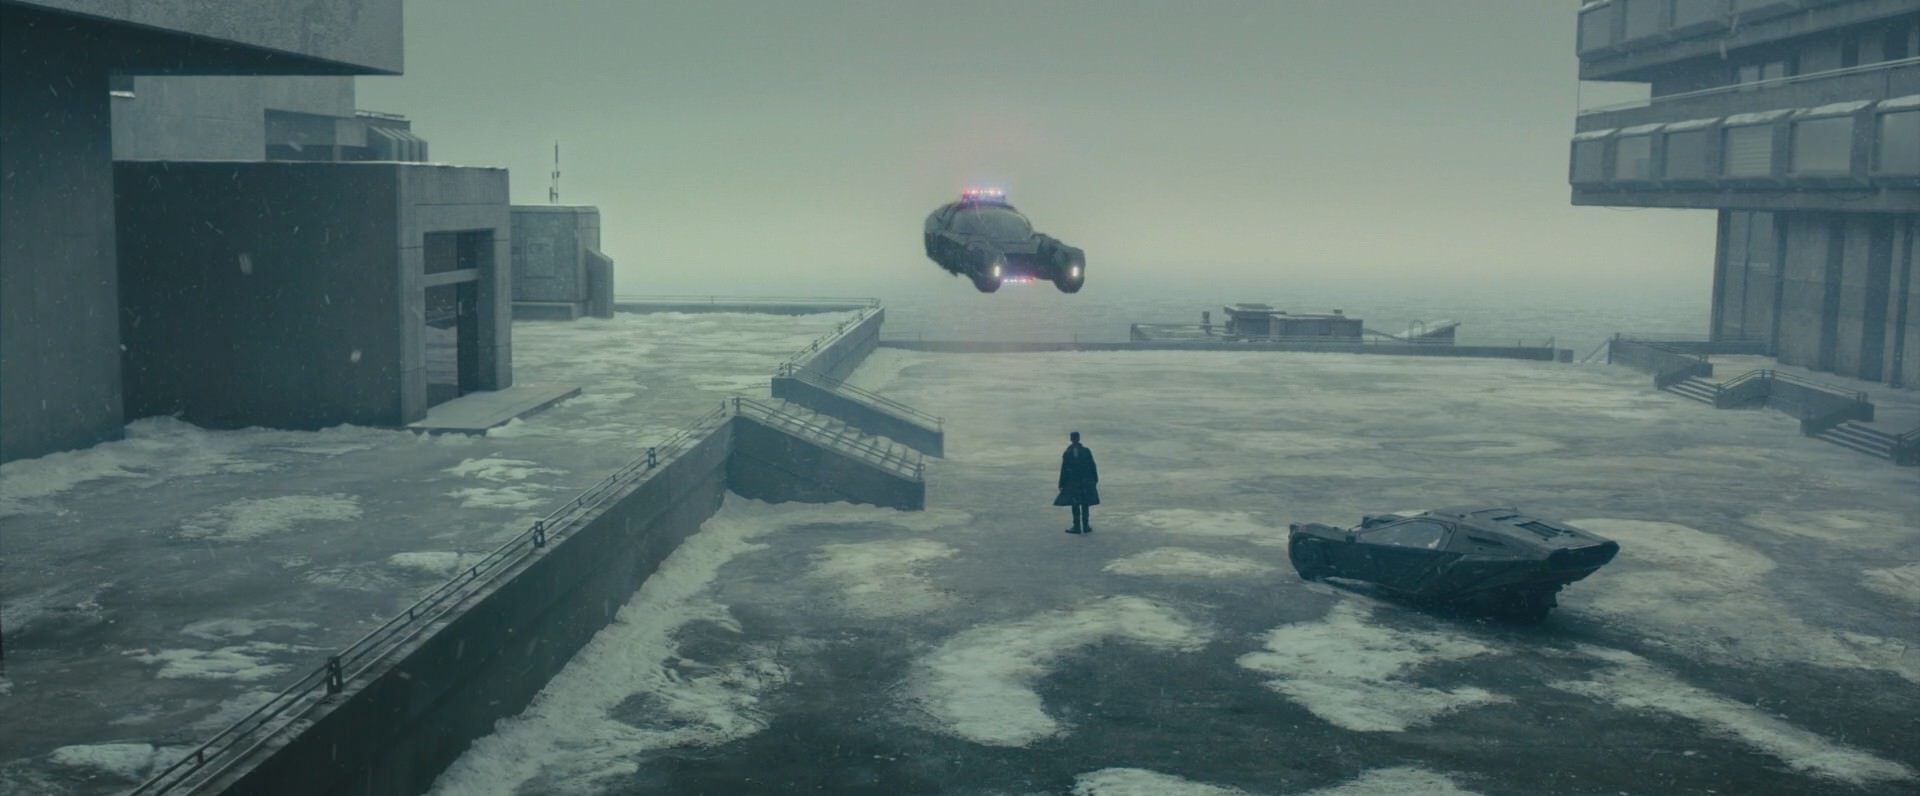 Blade Runner 2049 Snow , HD Wallpaper & Backgrounds